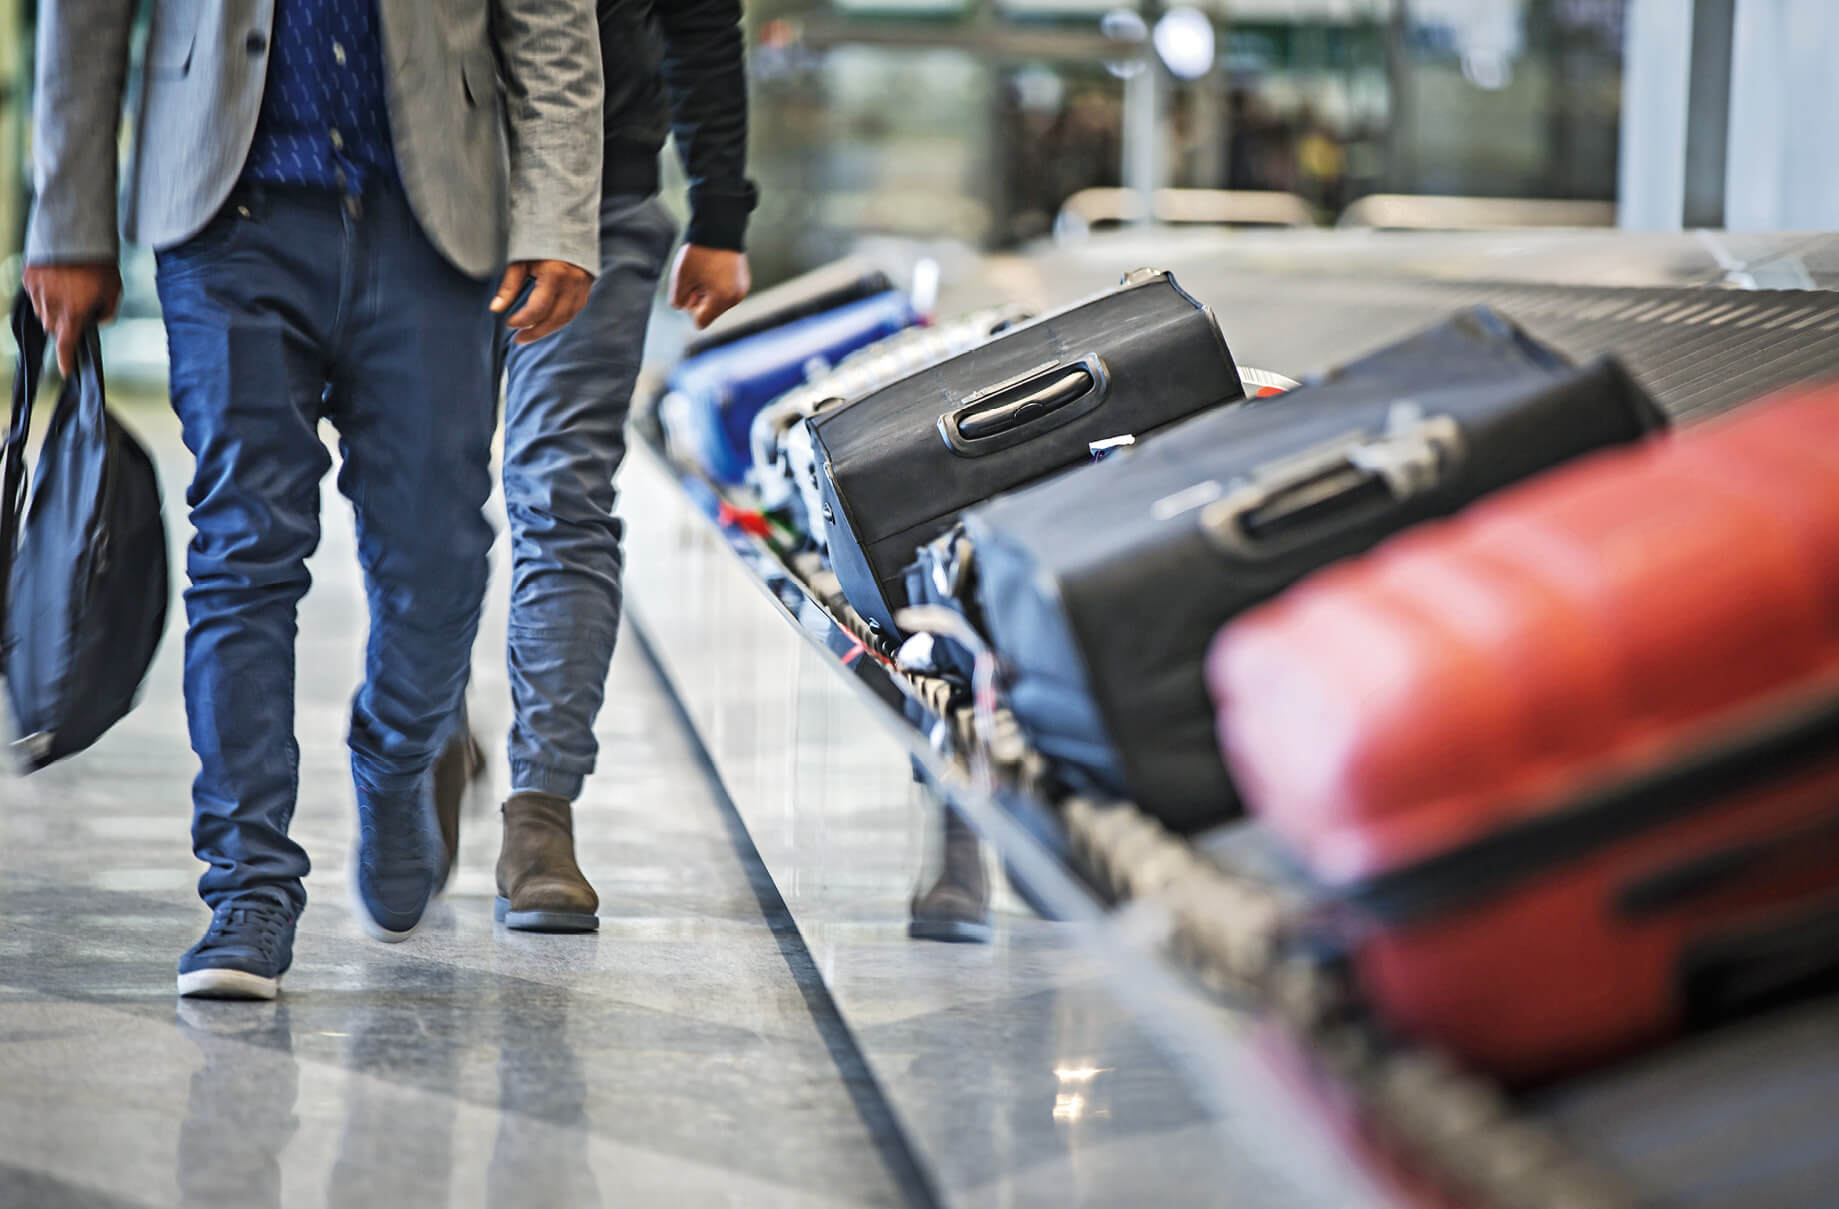 Auf die Plätze, fertig, los: Bei der Gepäckausgabe ist eine ausfallsichere ITInfrastruktur notwendig, um Wartezeiten möglichst gering zu halten. Ⓒ Adobe Stock/catwalkphotos